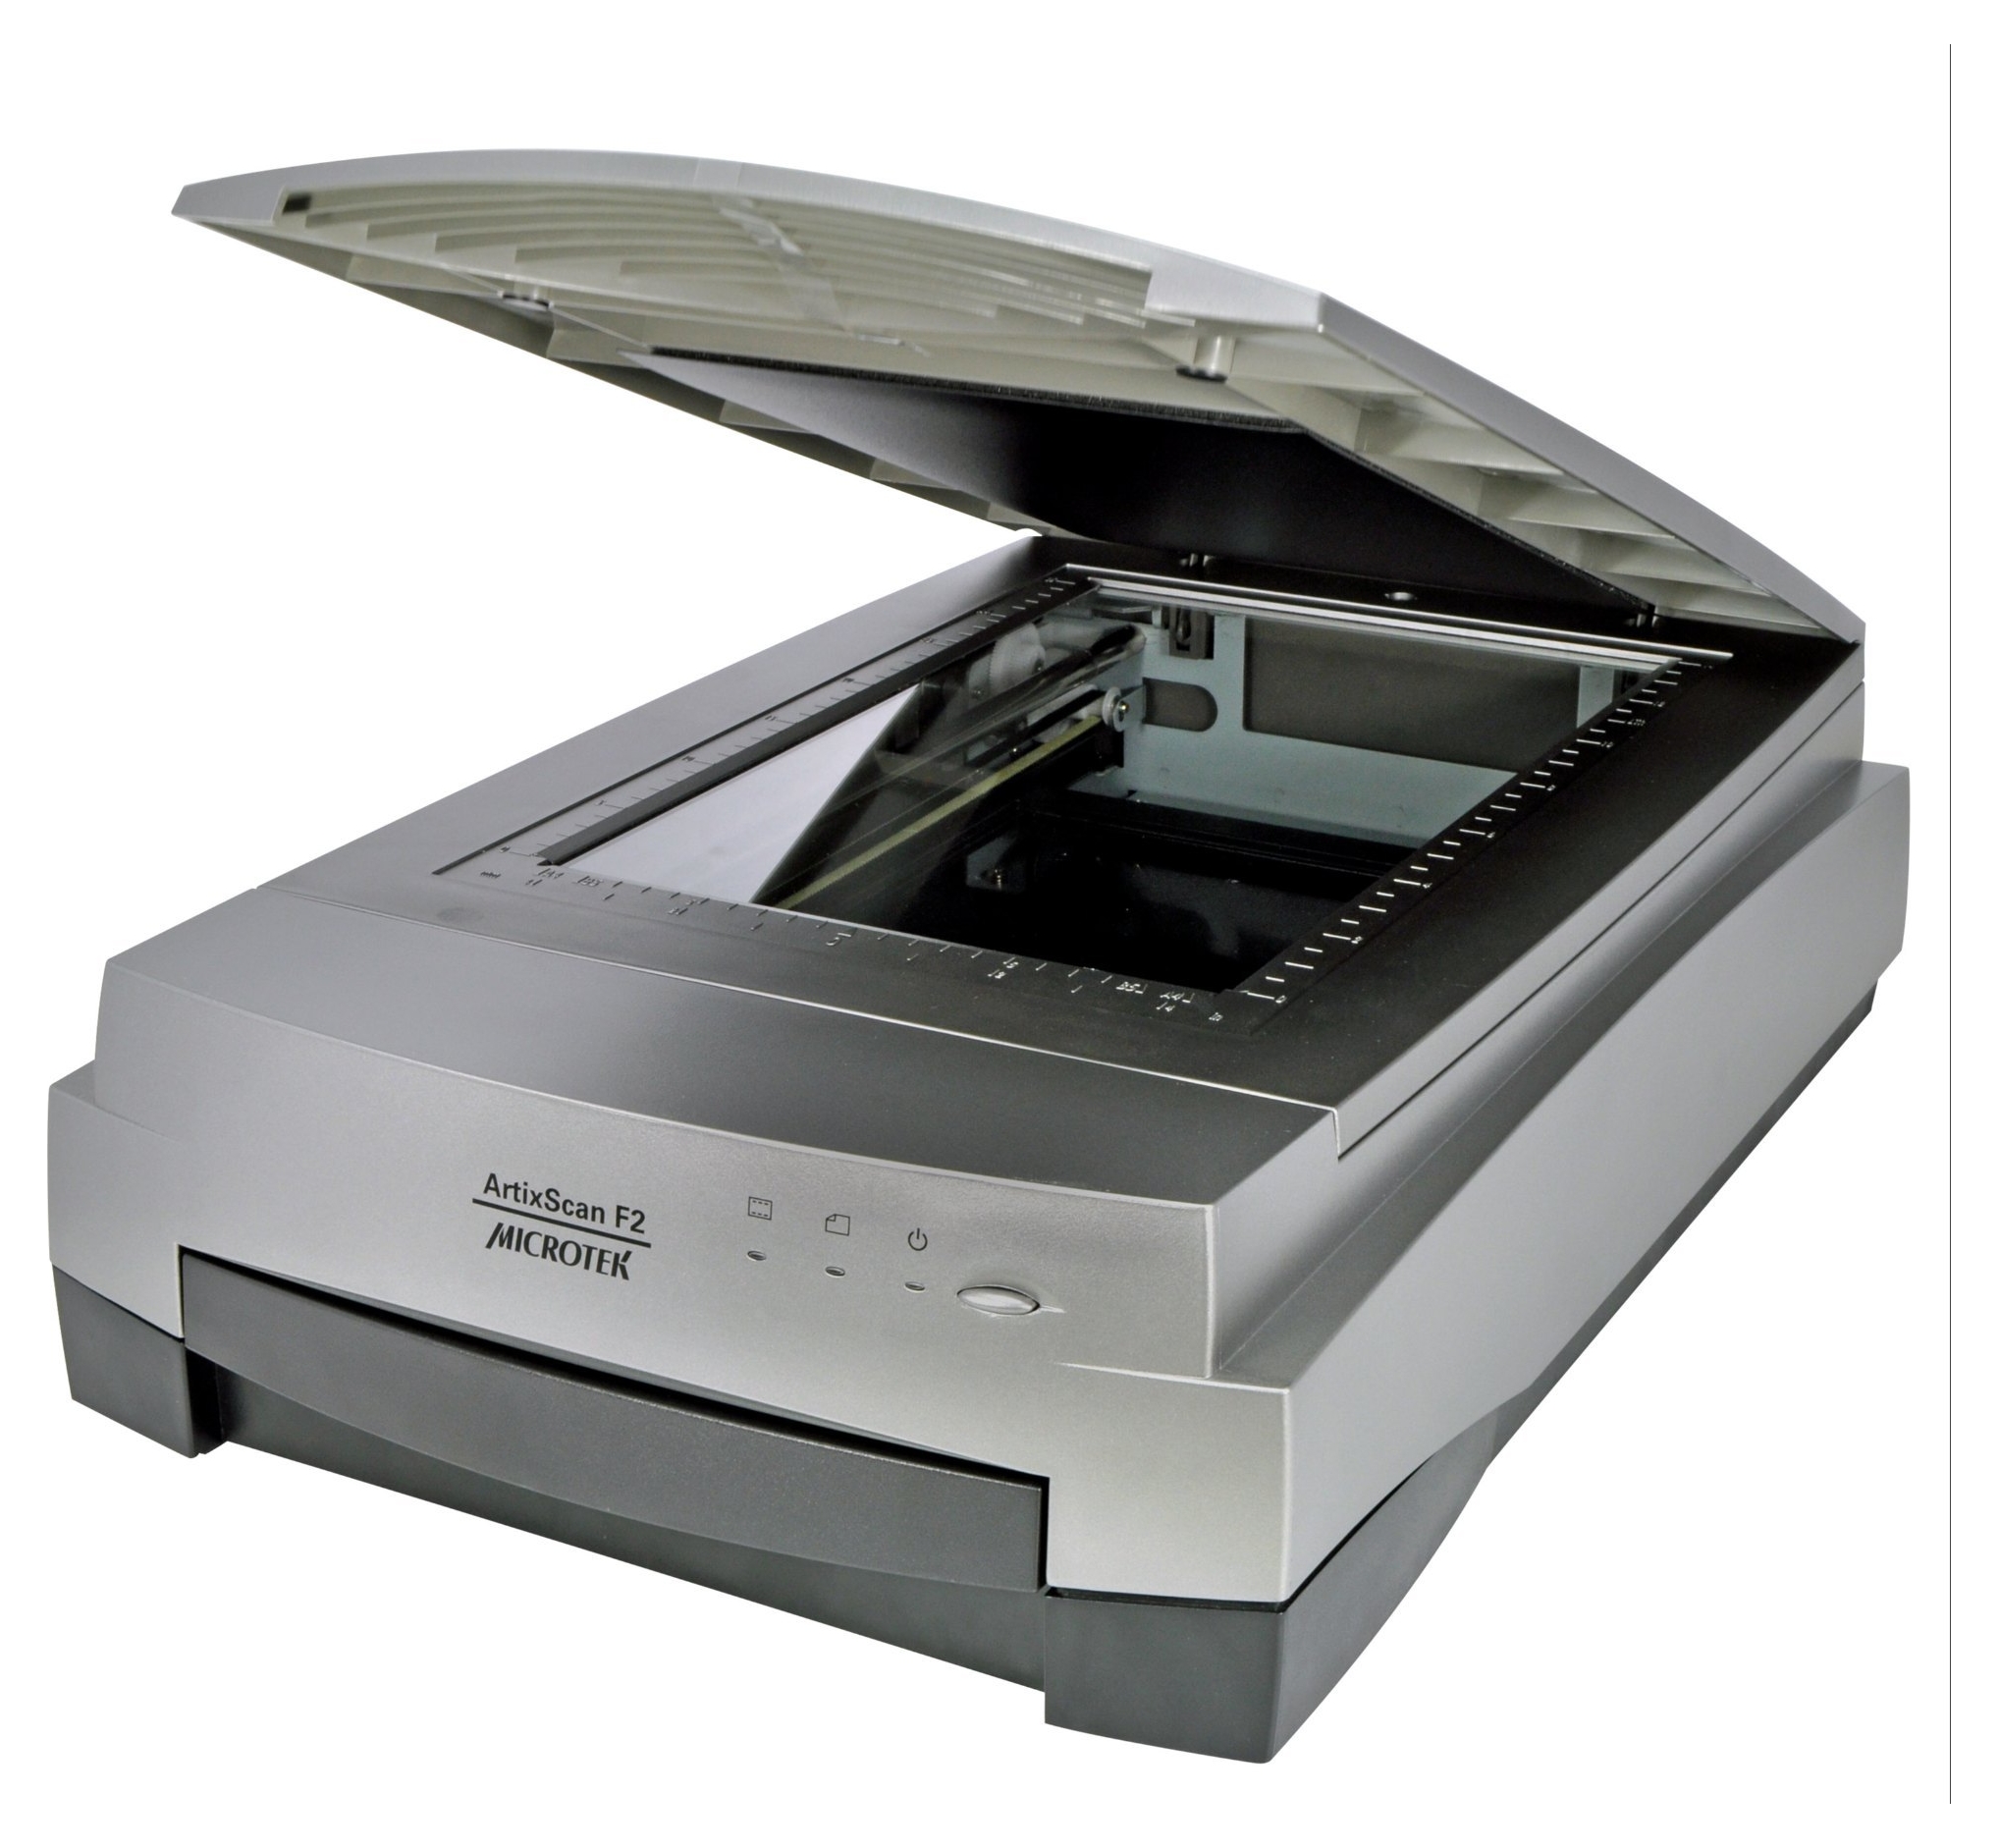 Планшетный сканер. Сканер Microtek ARTIXSCAN f2. Сканер Microtek ARTIXSCAN di 2020 Plus. Microtek ARTIXSCAN 2500f. Сканер Microtek ARTIXSCAN di 6250s.